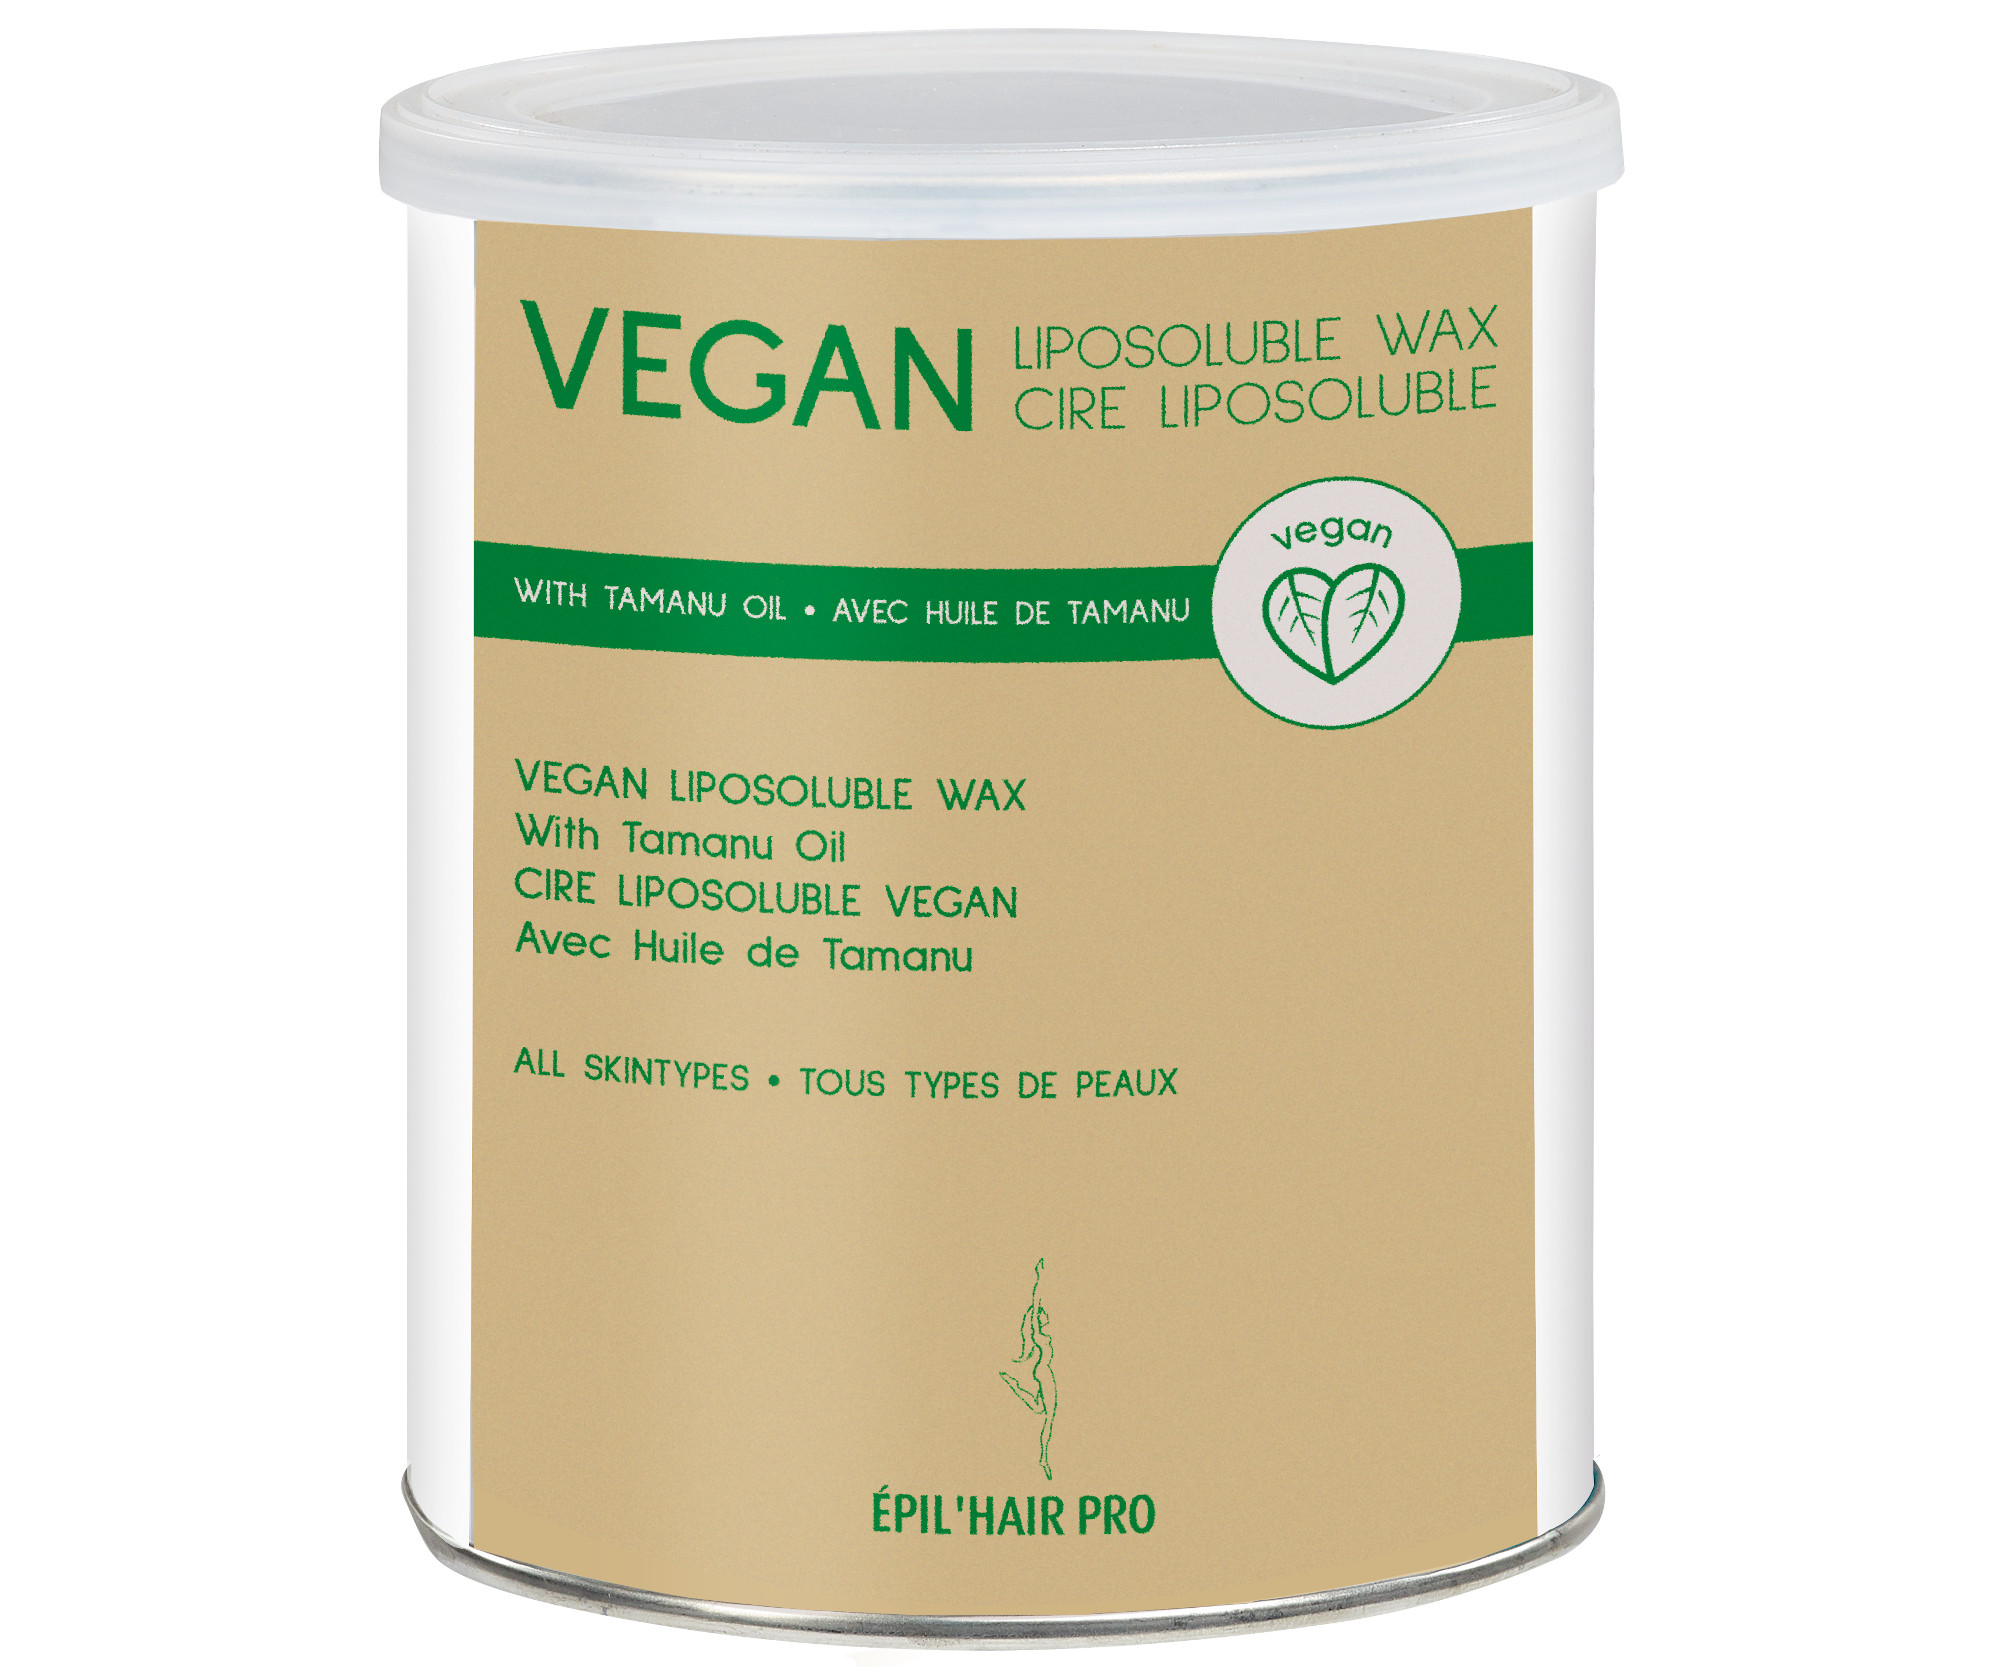 Depilační vosk v plechovce pro všechny typy pokožky, veganský - 800 ml (7450800) - Sibel + DÁREK ZDARMA